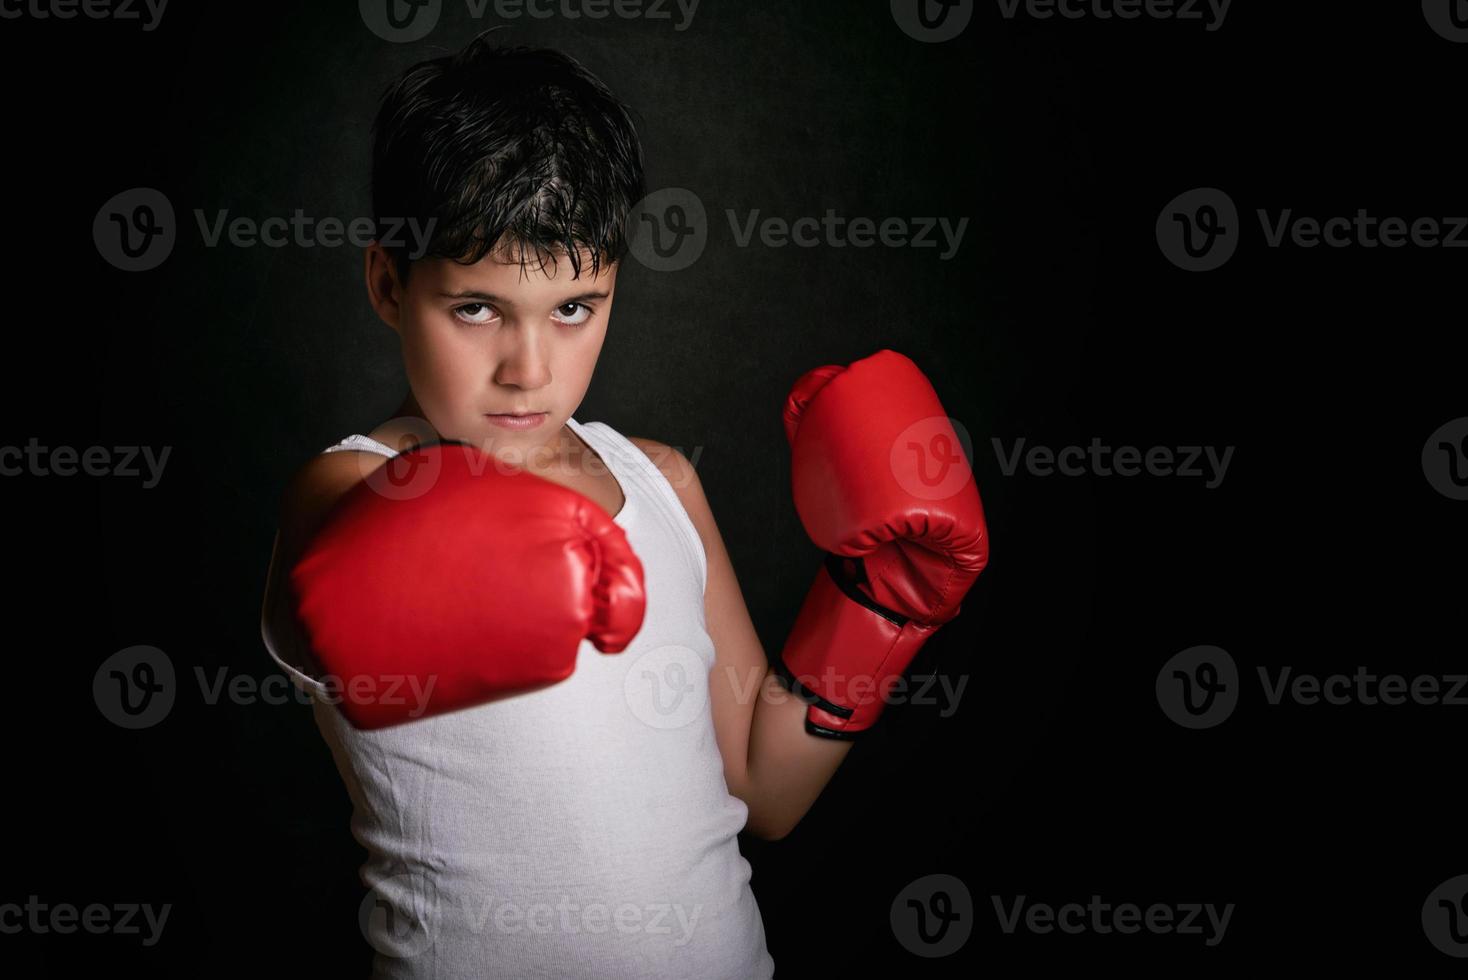 liten pojke med boxningshandskar foto